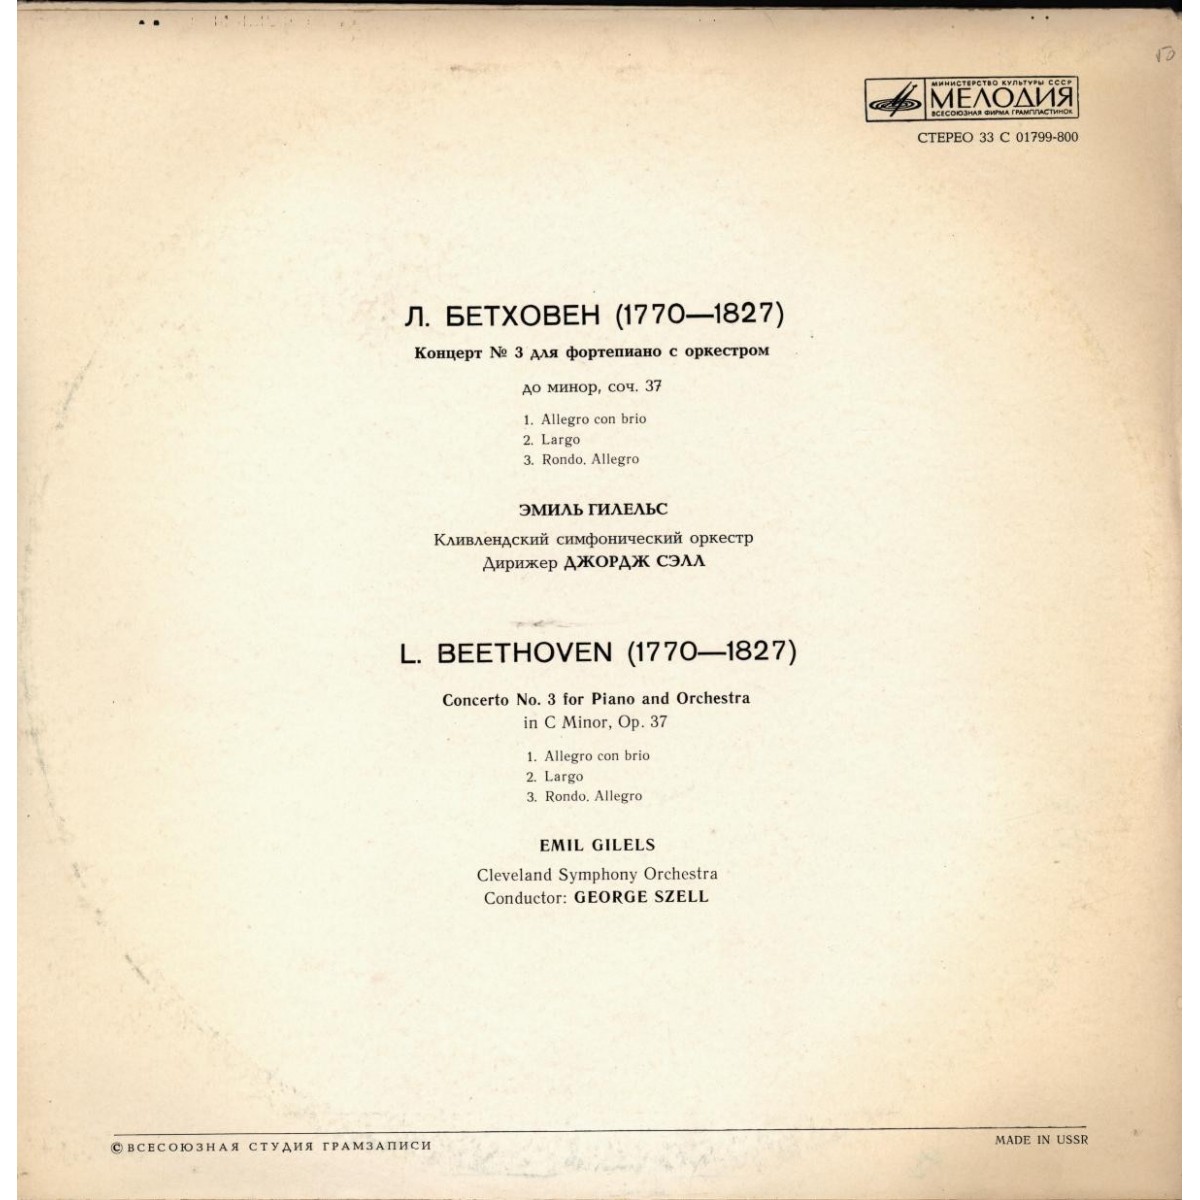 Л. Бетховен: Концерт № 3 для ф-но с оркестром (Э. Гилельс, Кливлендский СО, дир. Дж. Сэлл)